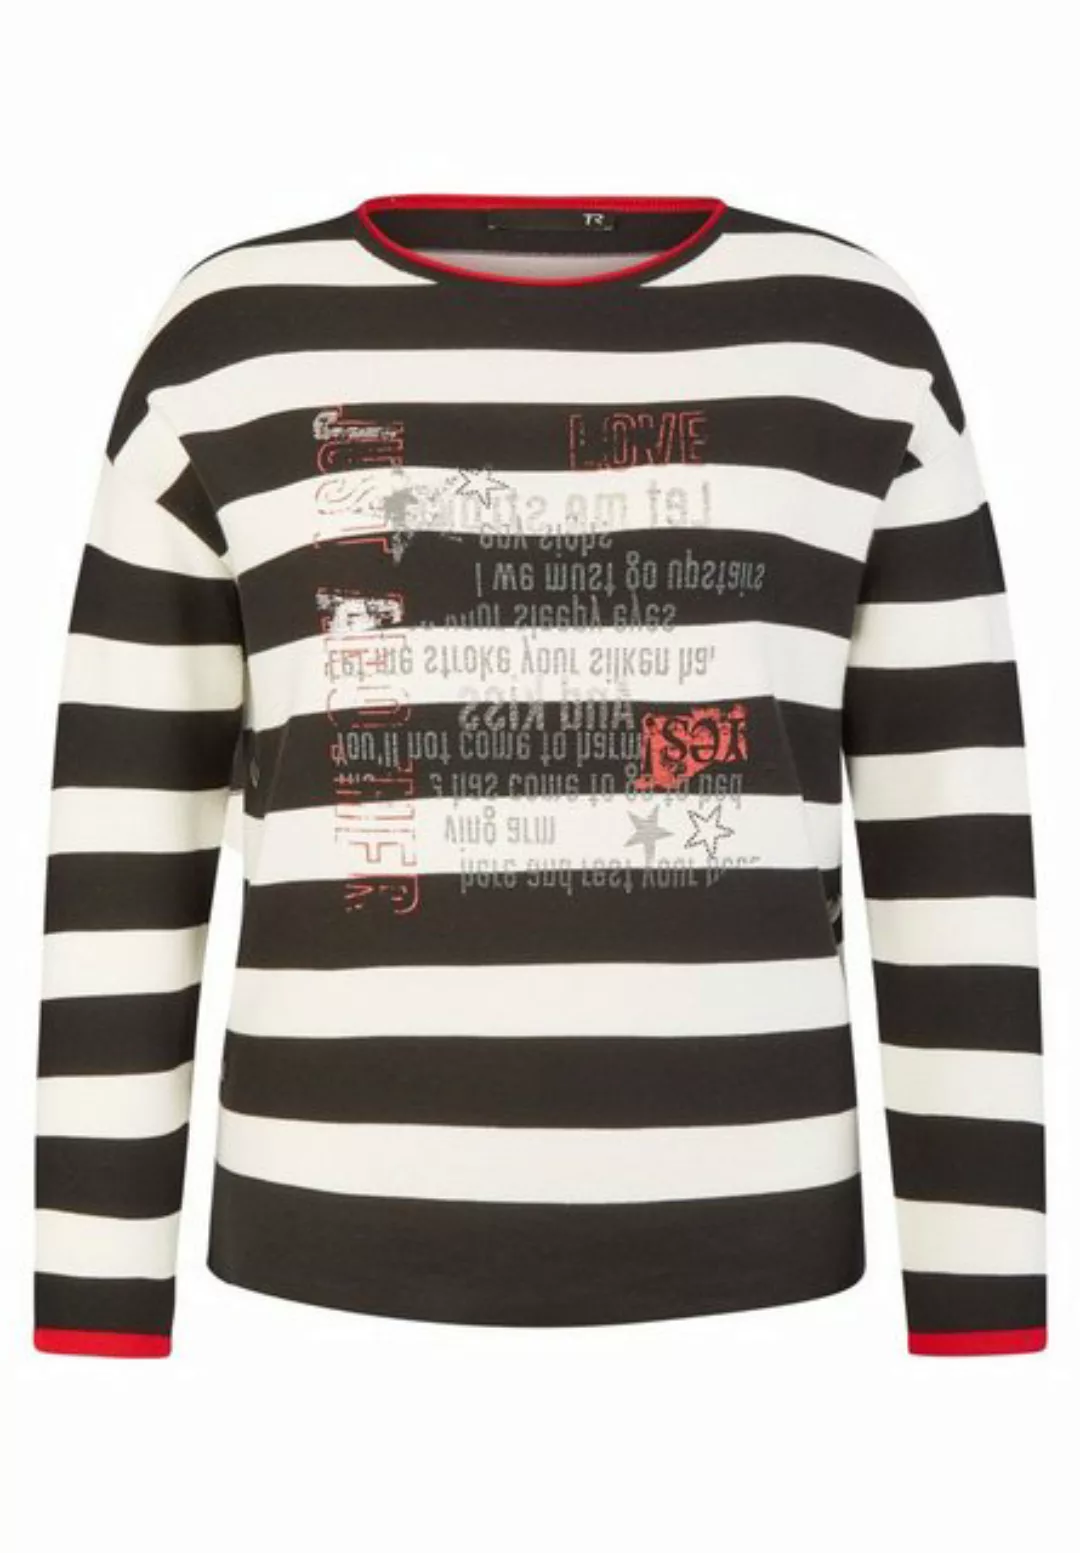 Rabe Sweatshirt Pullover Rundhals 1/1 Arm günstig online kaufen